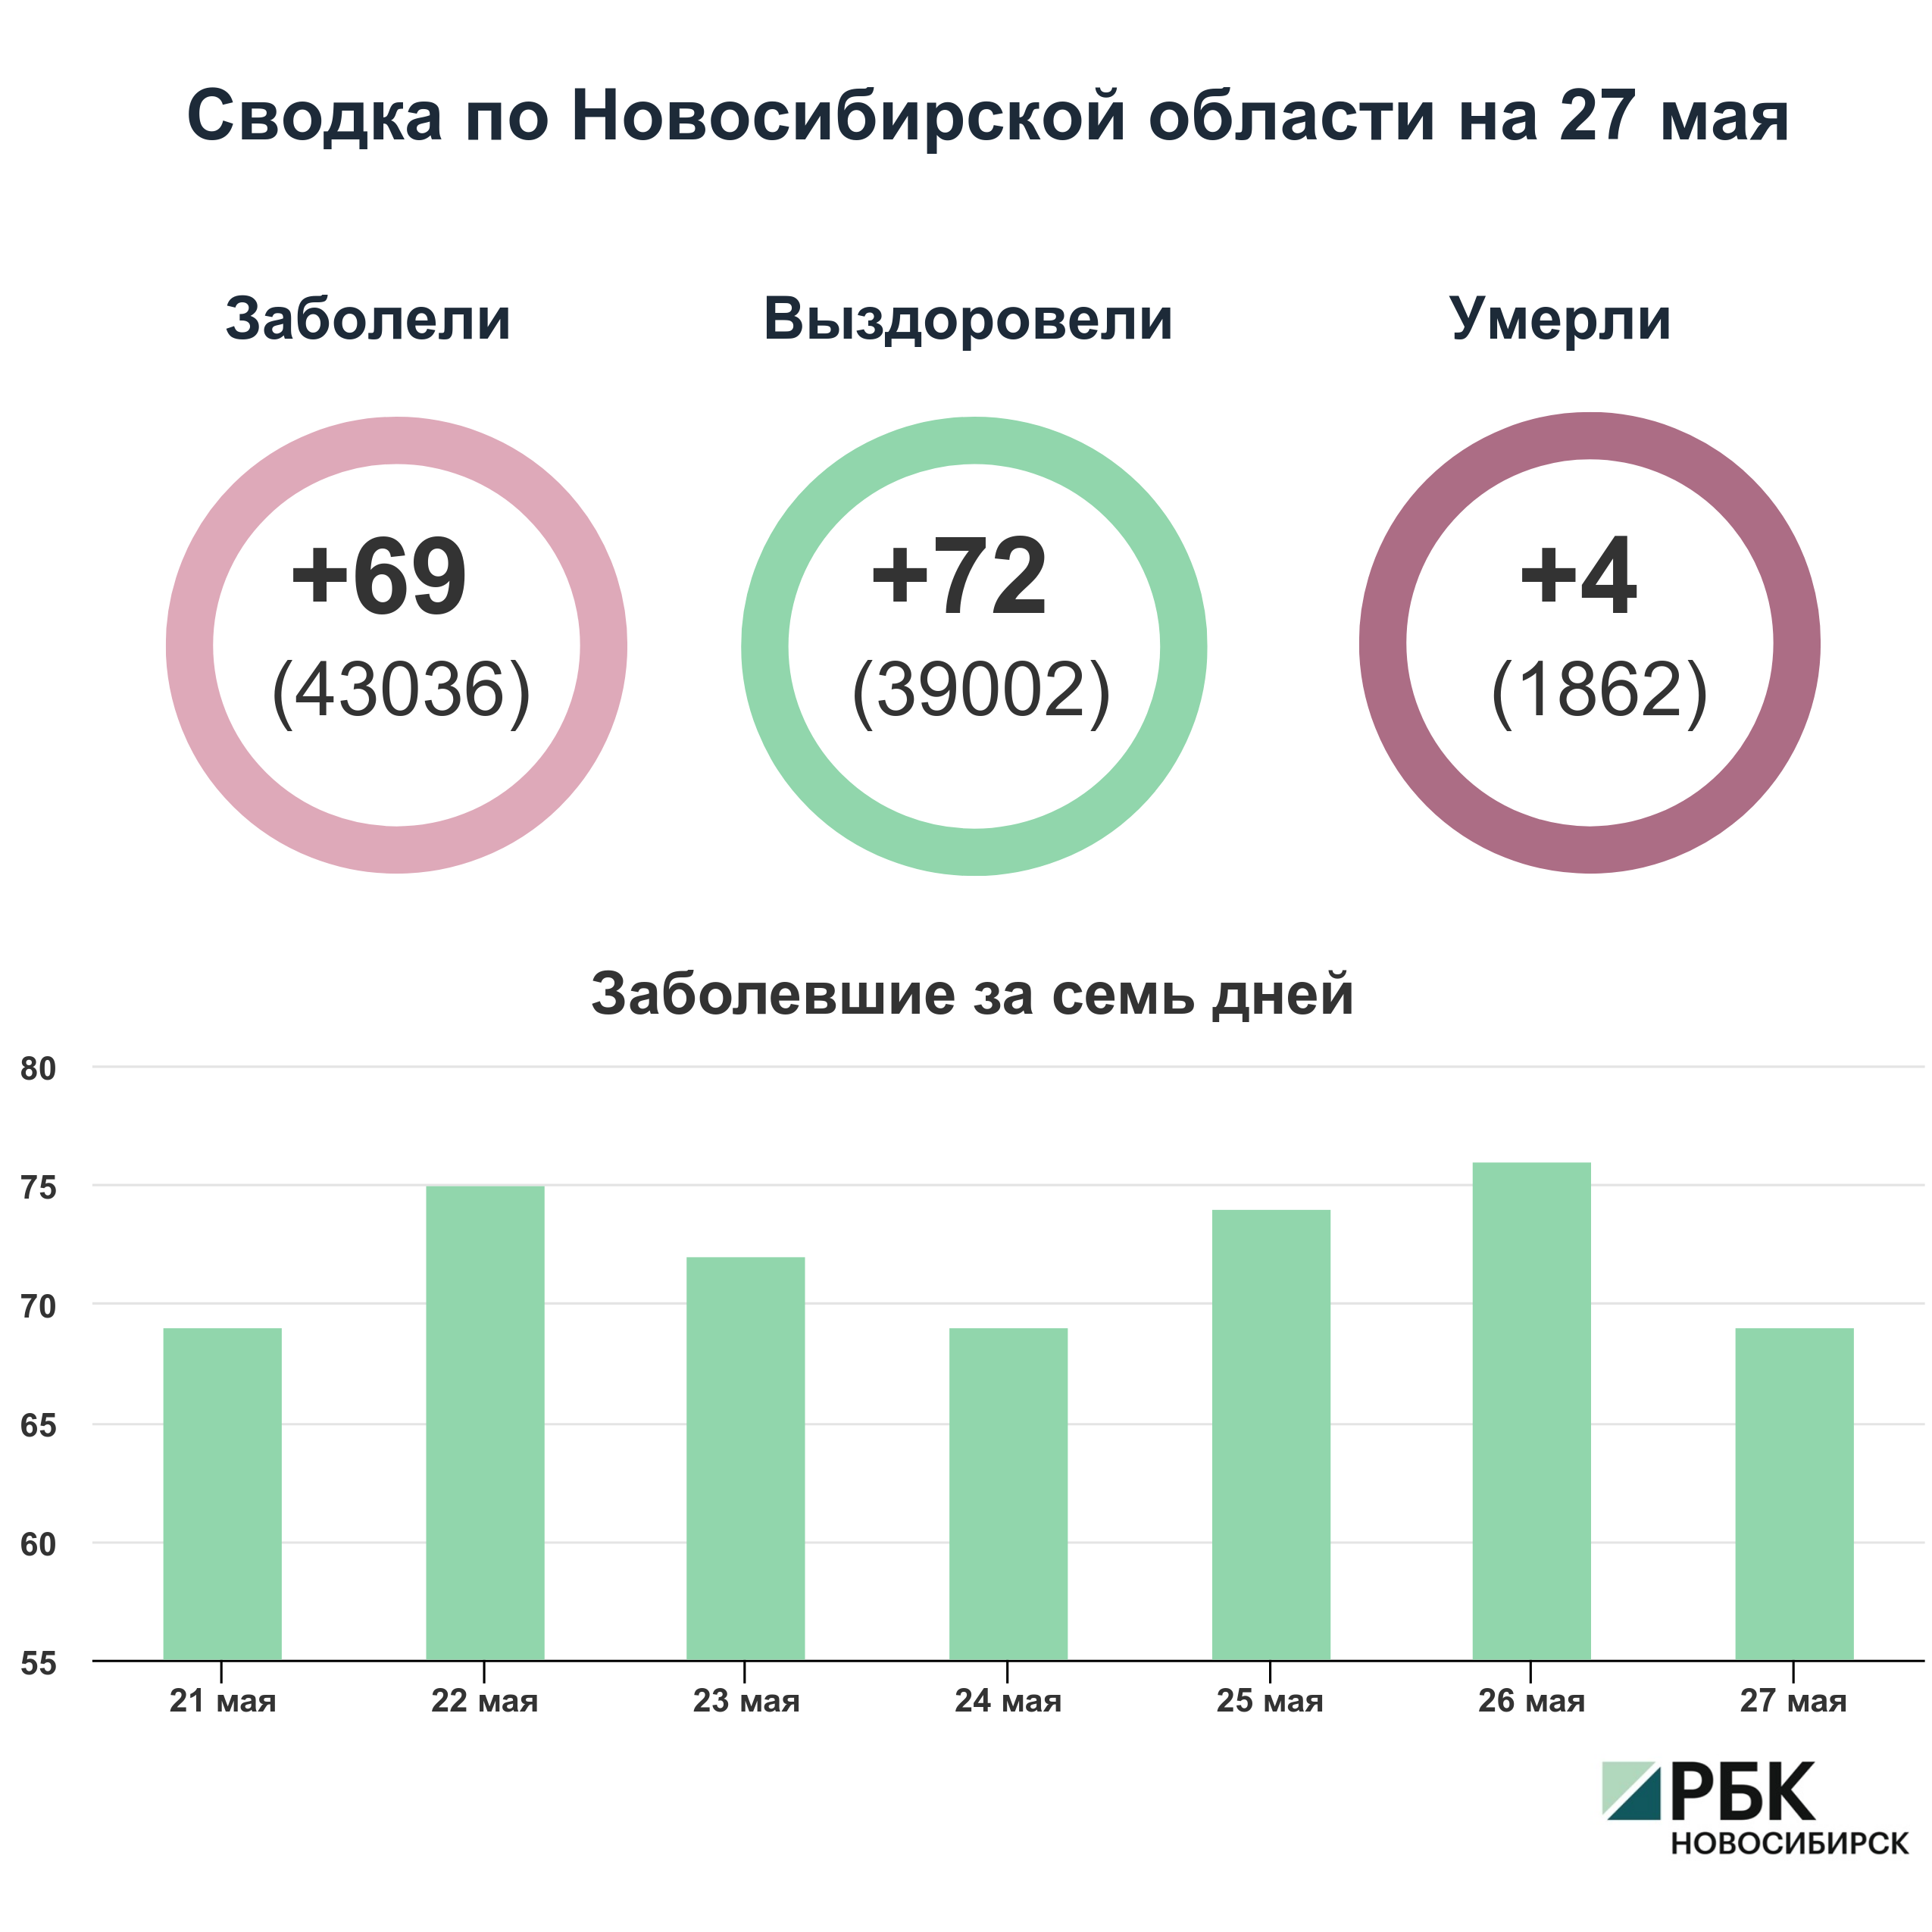 Коронавирус в Новосибирске: сводка на 27 мая